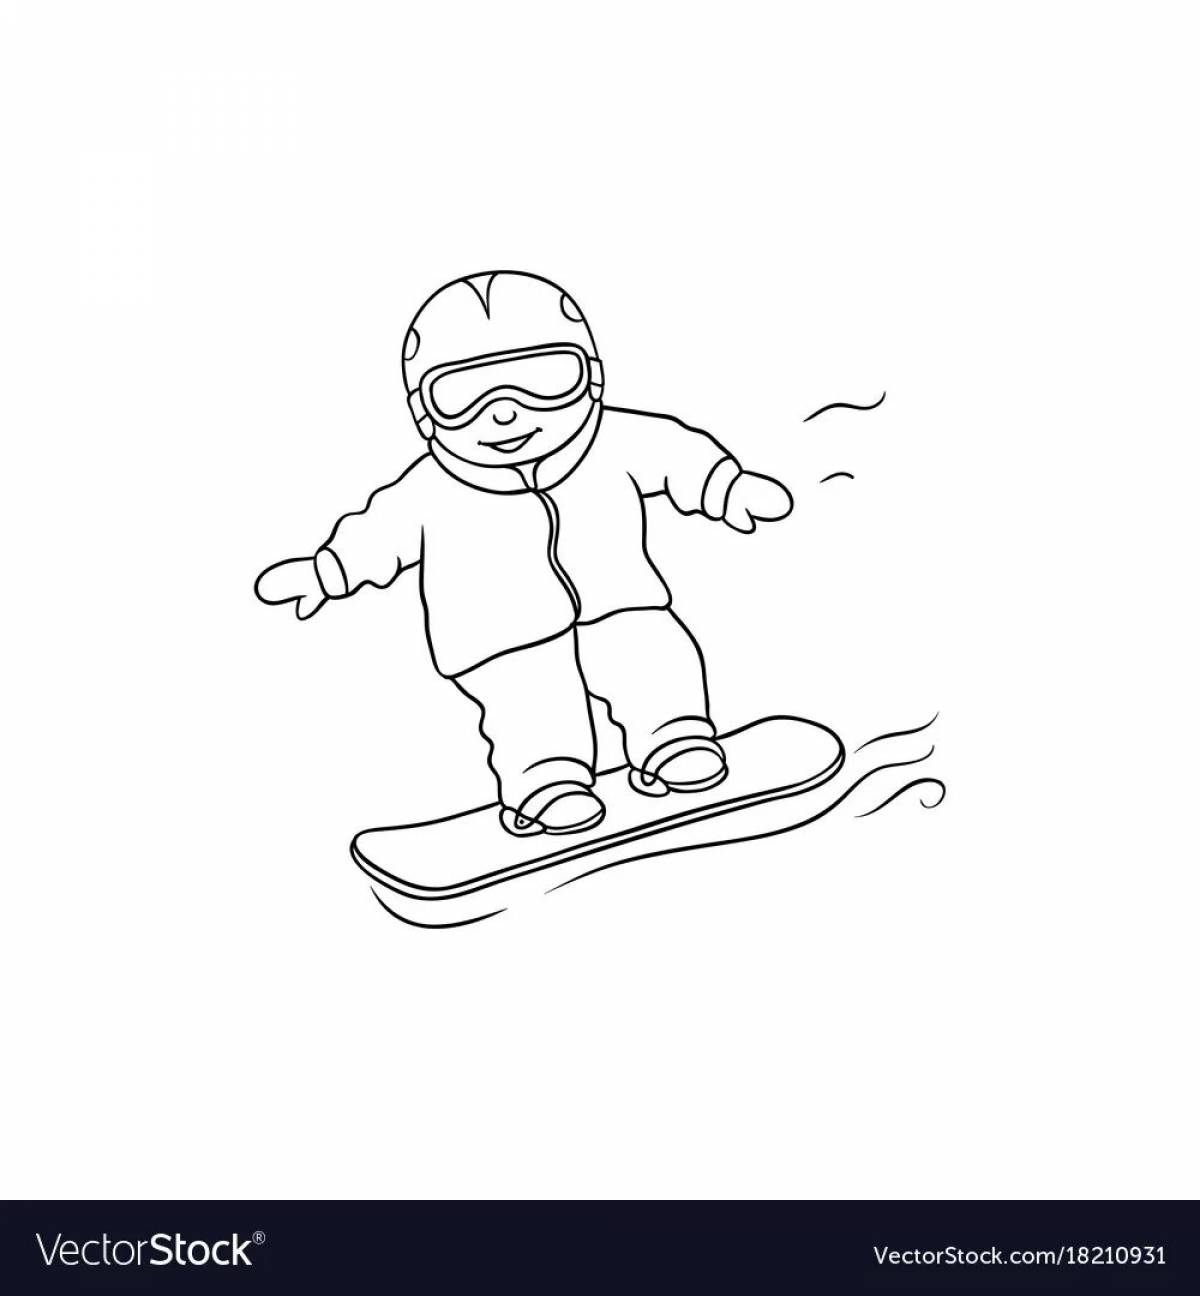 Сноуборд раскраска для детей